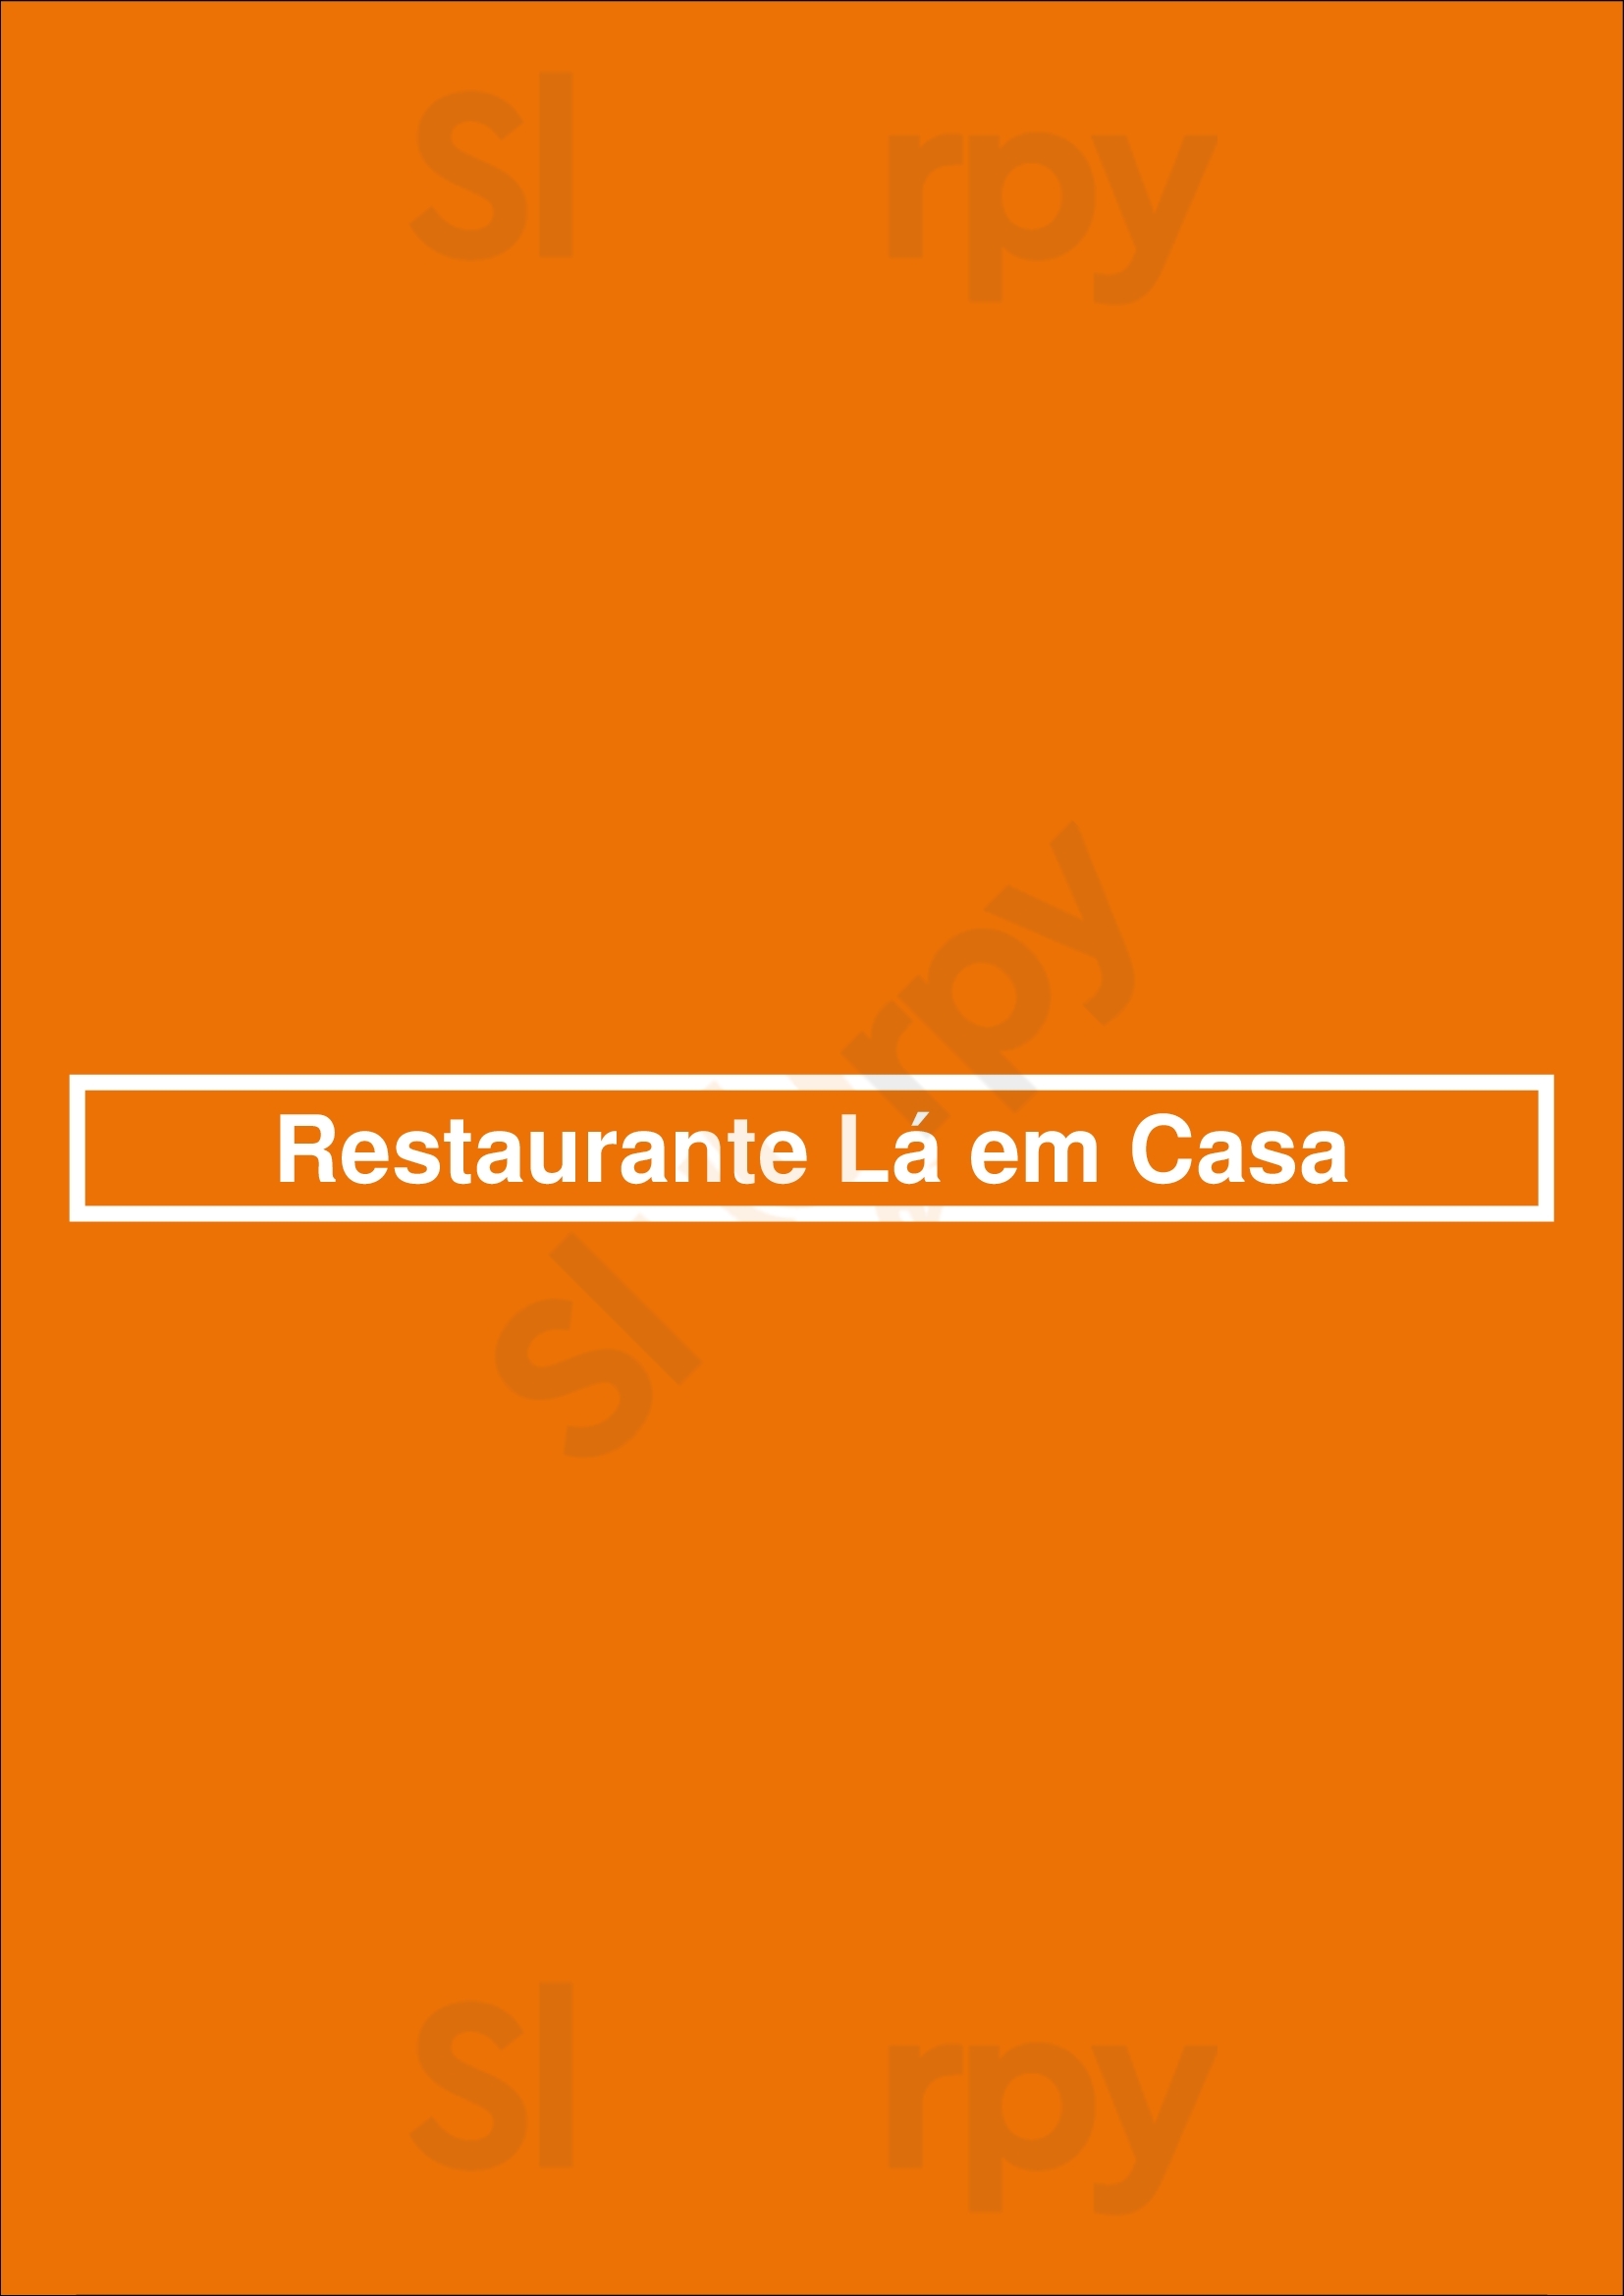 Restaurante Lá Em Casa Lisboa Menu - 1